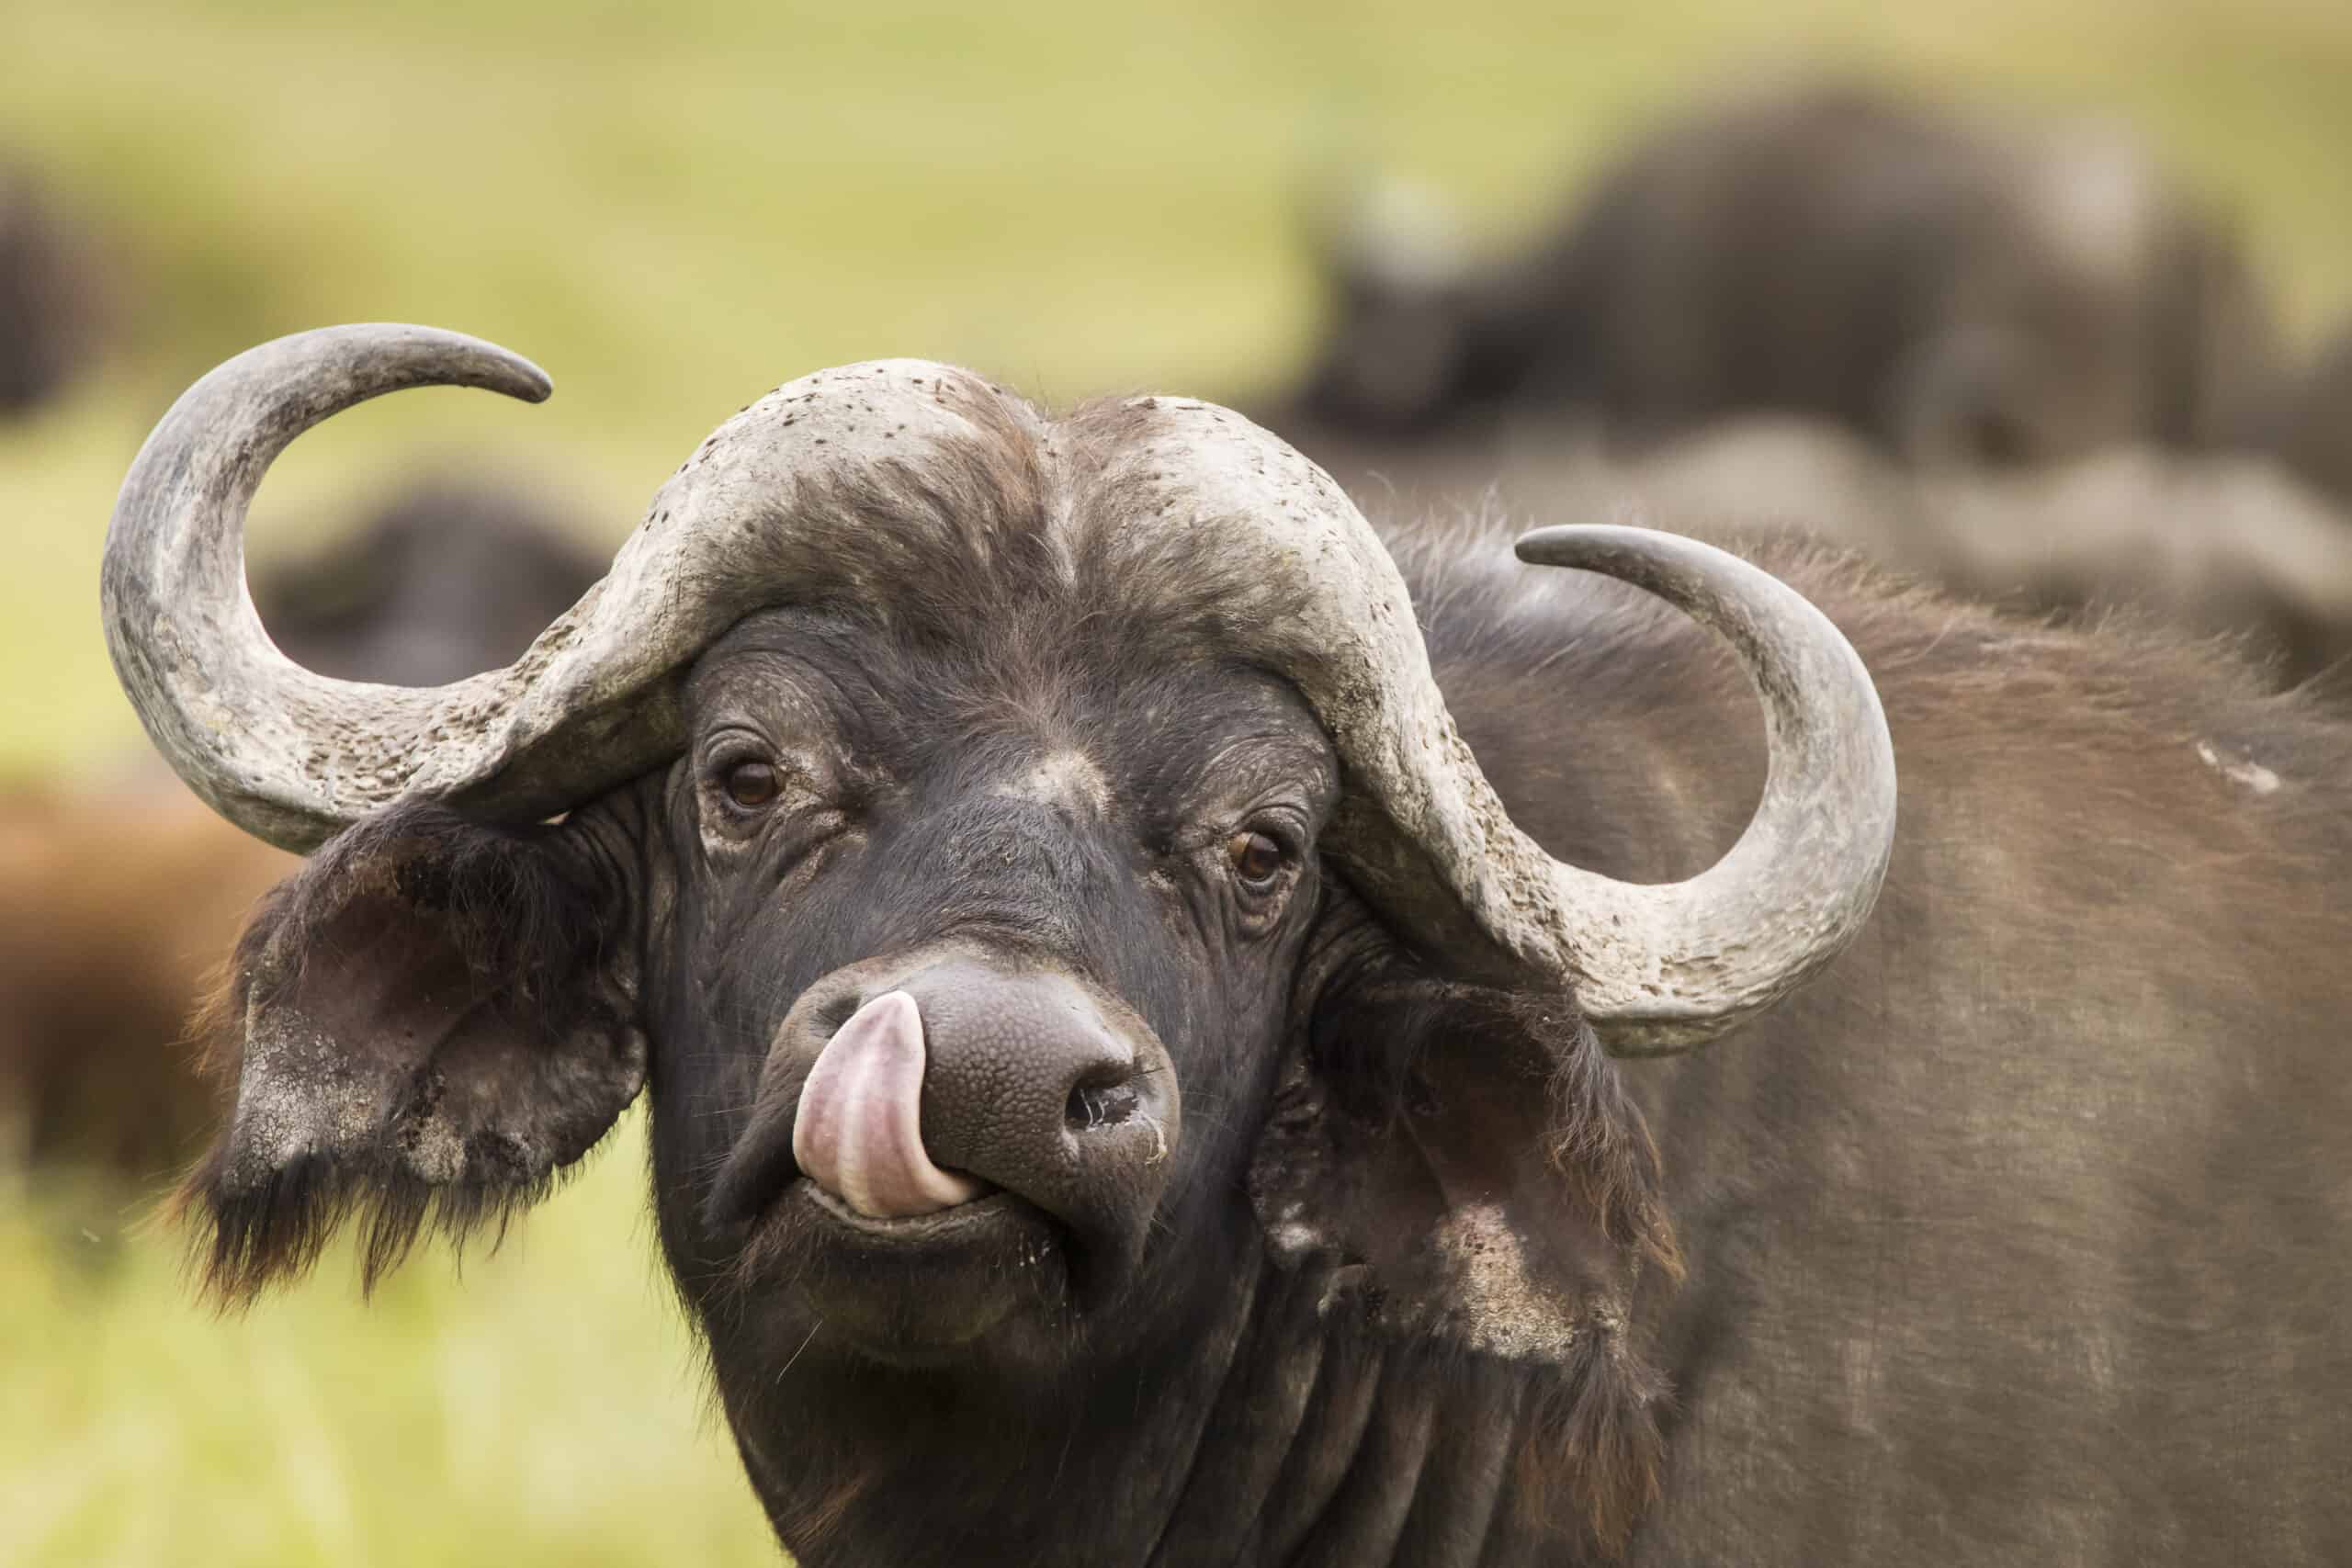 Buffalo in grass